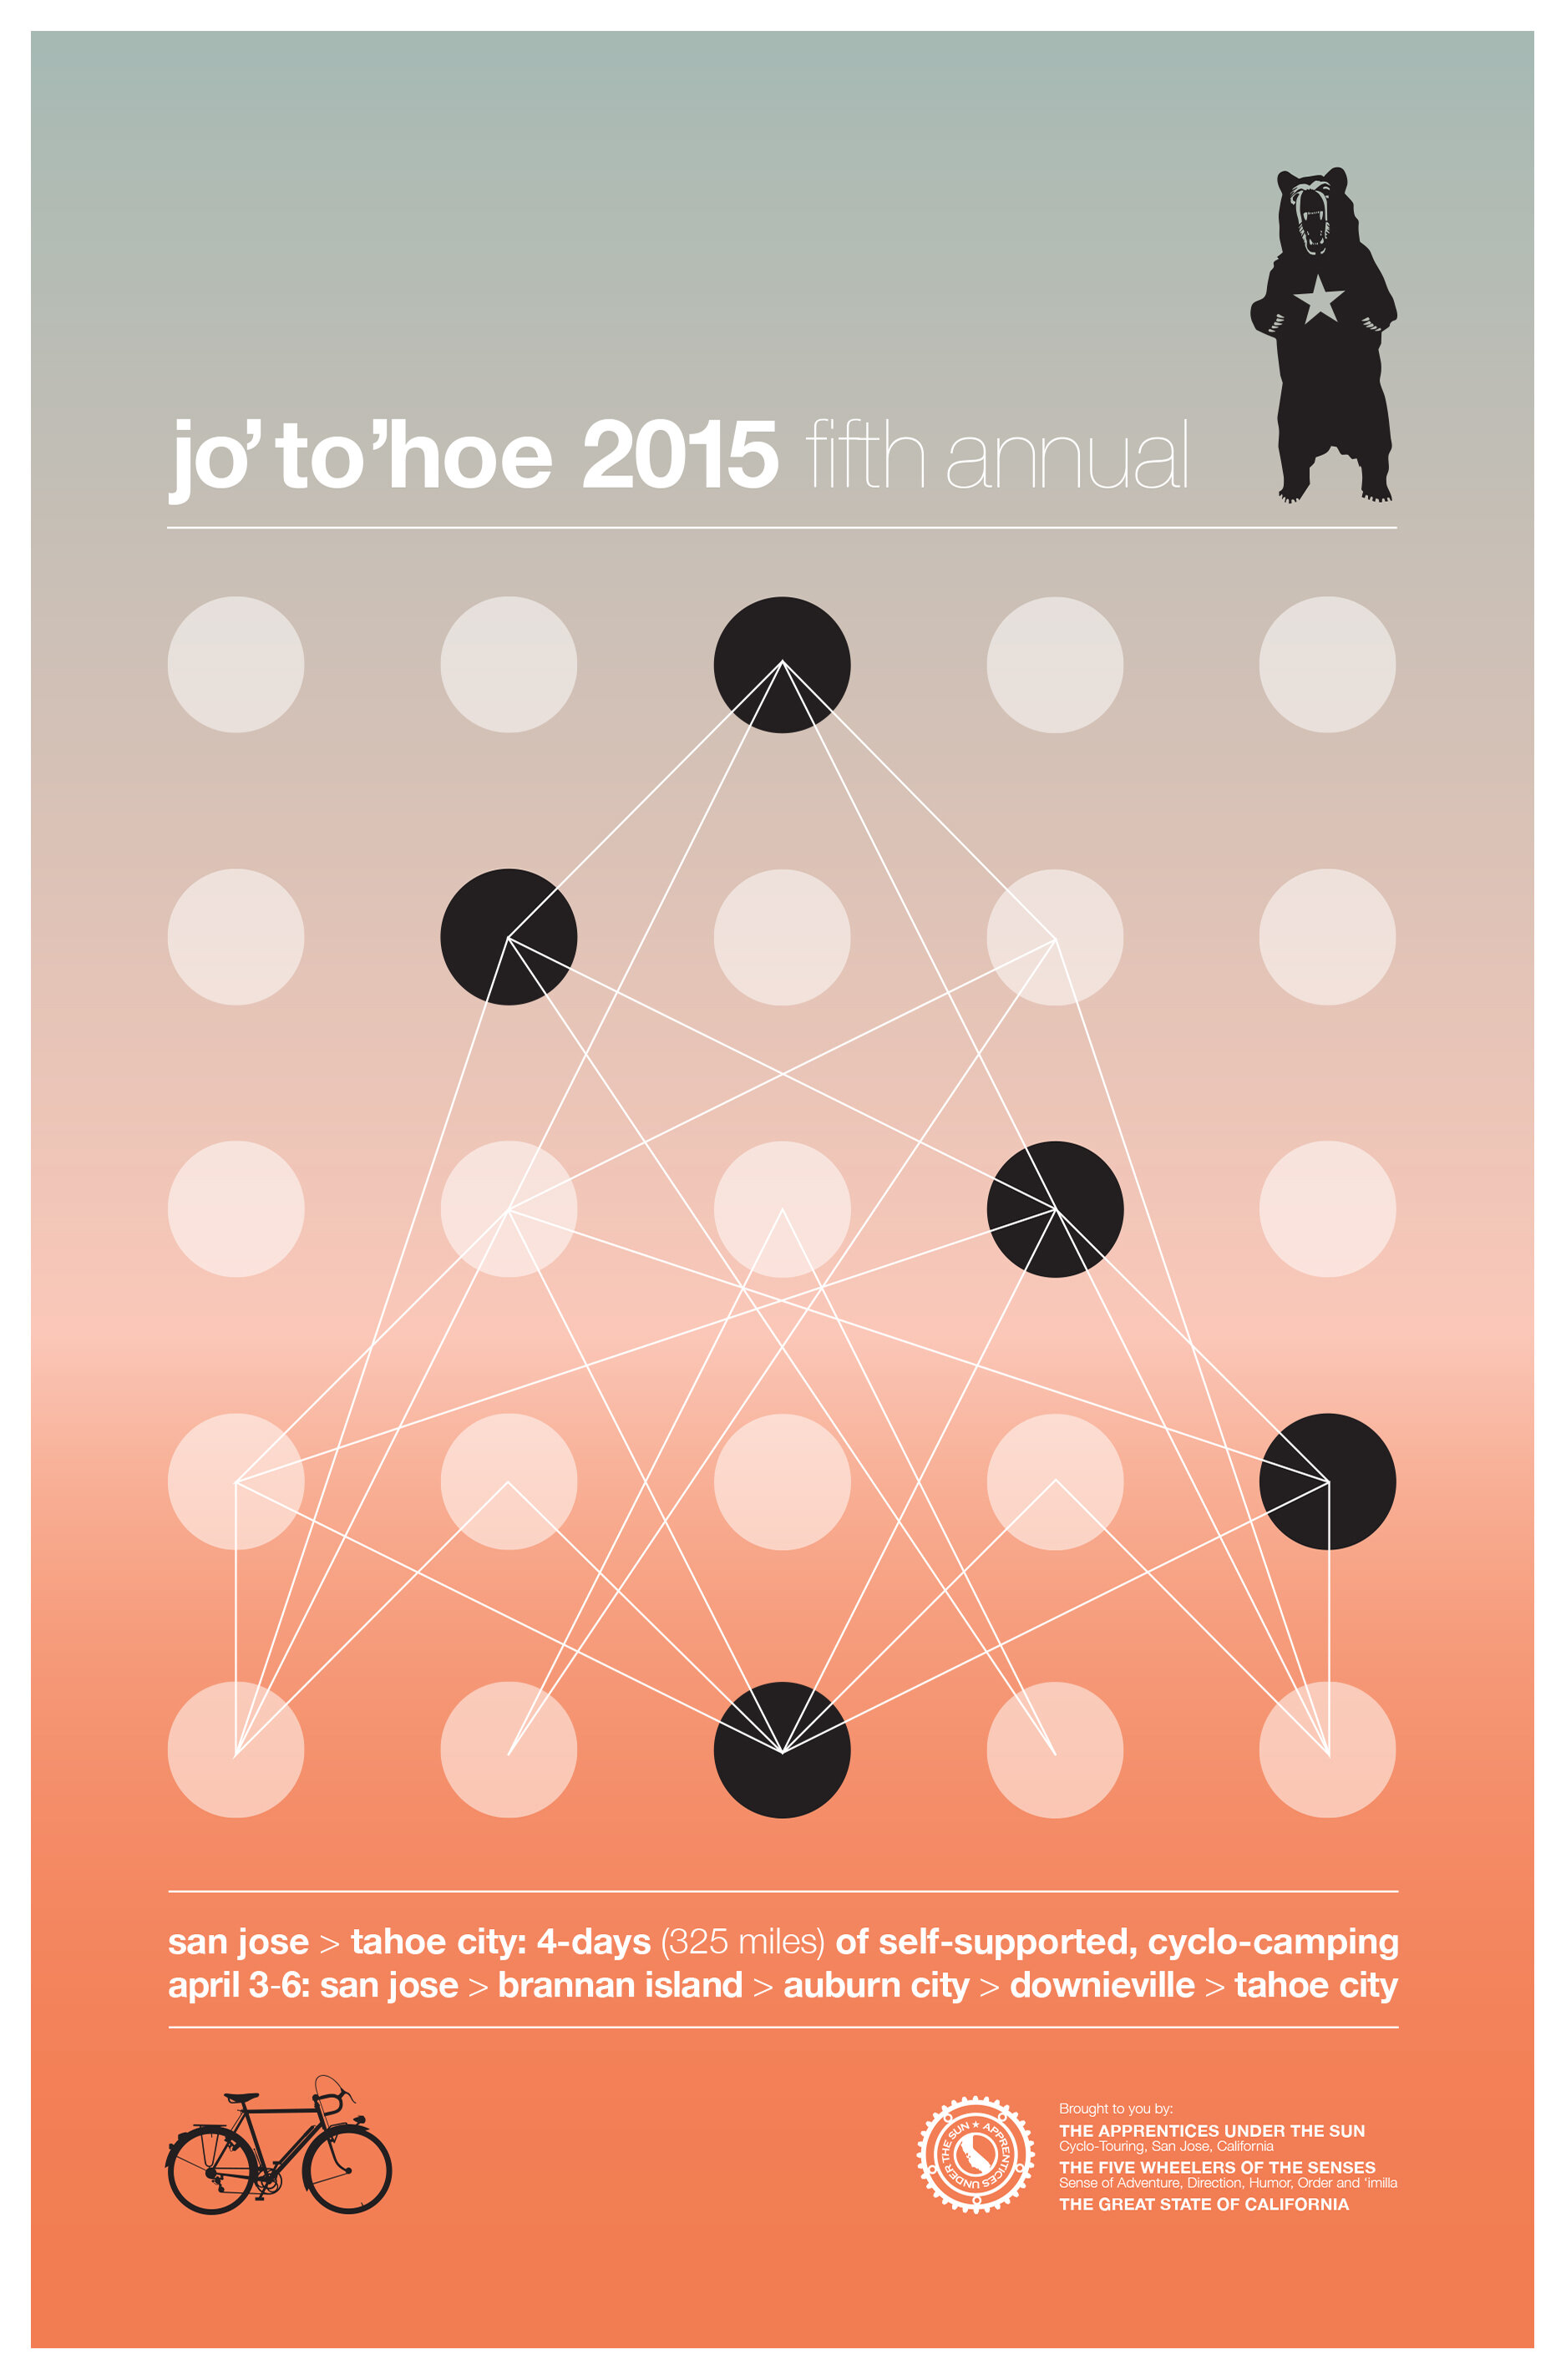 jotohoe2015.jpg